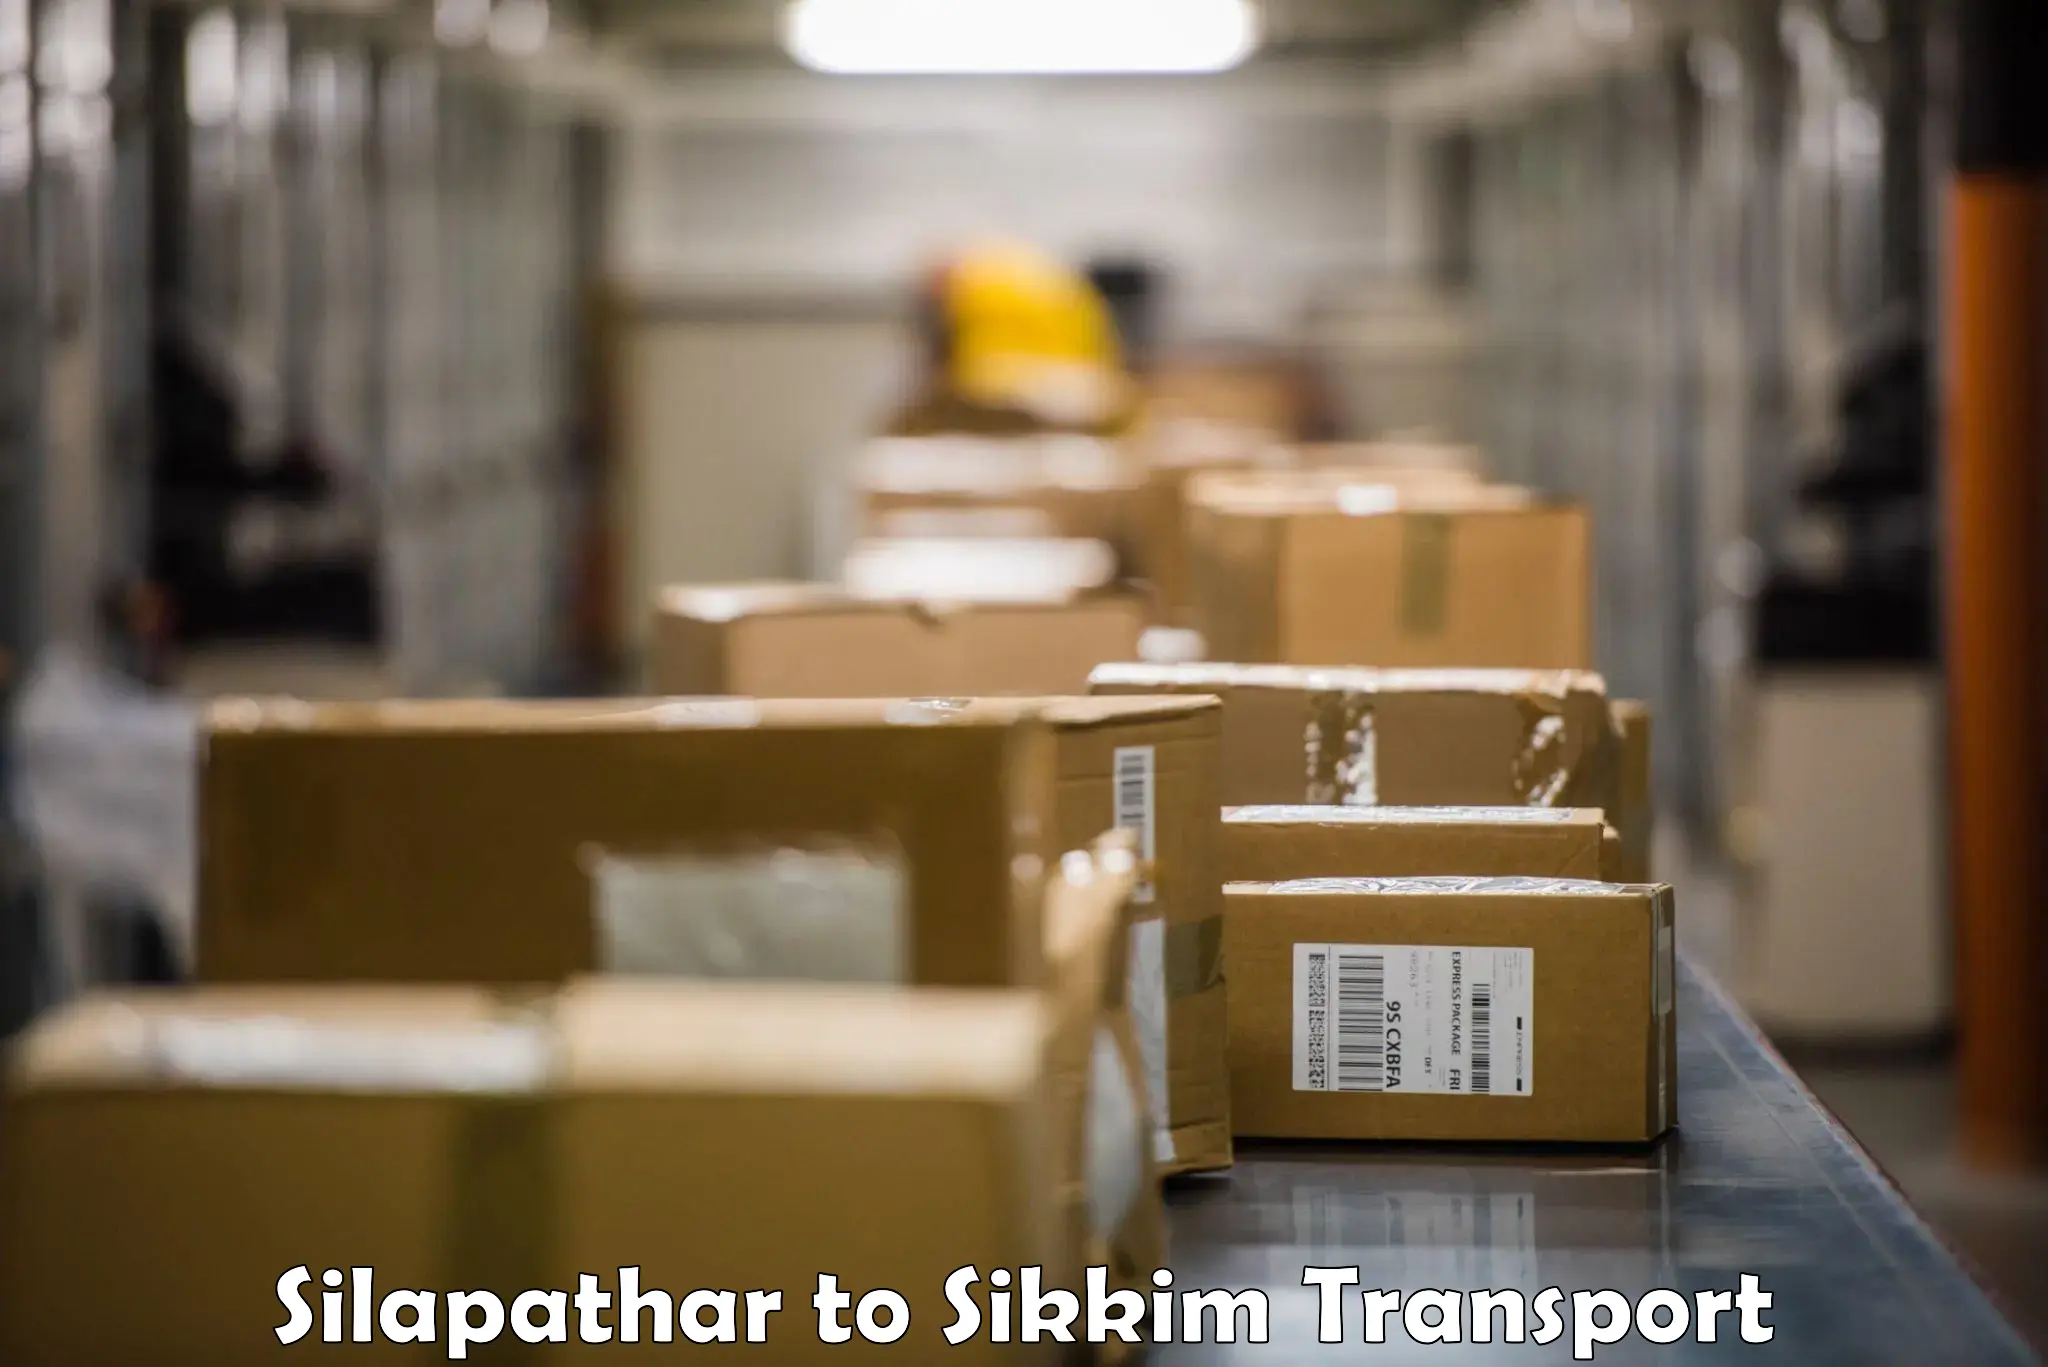 Furniture transport service Silapathar to Mangan